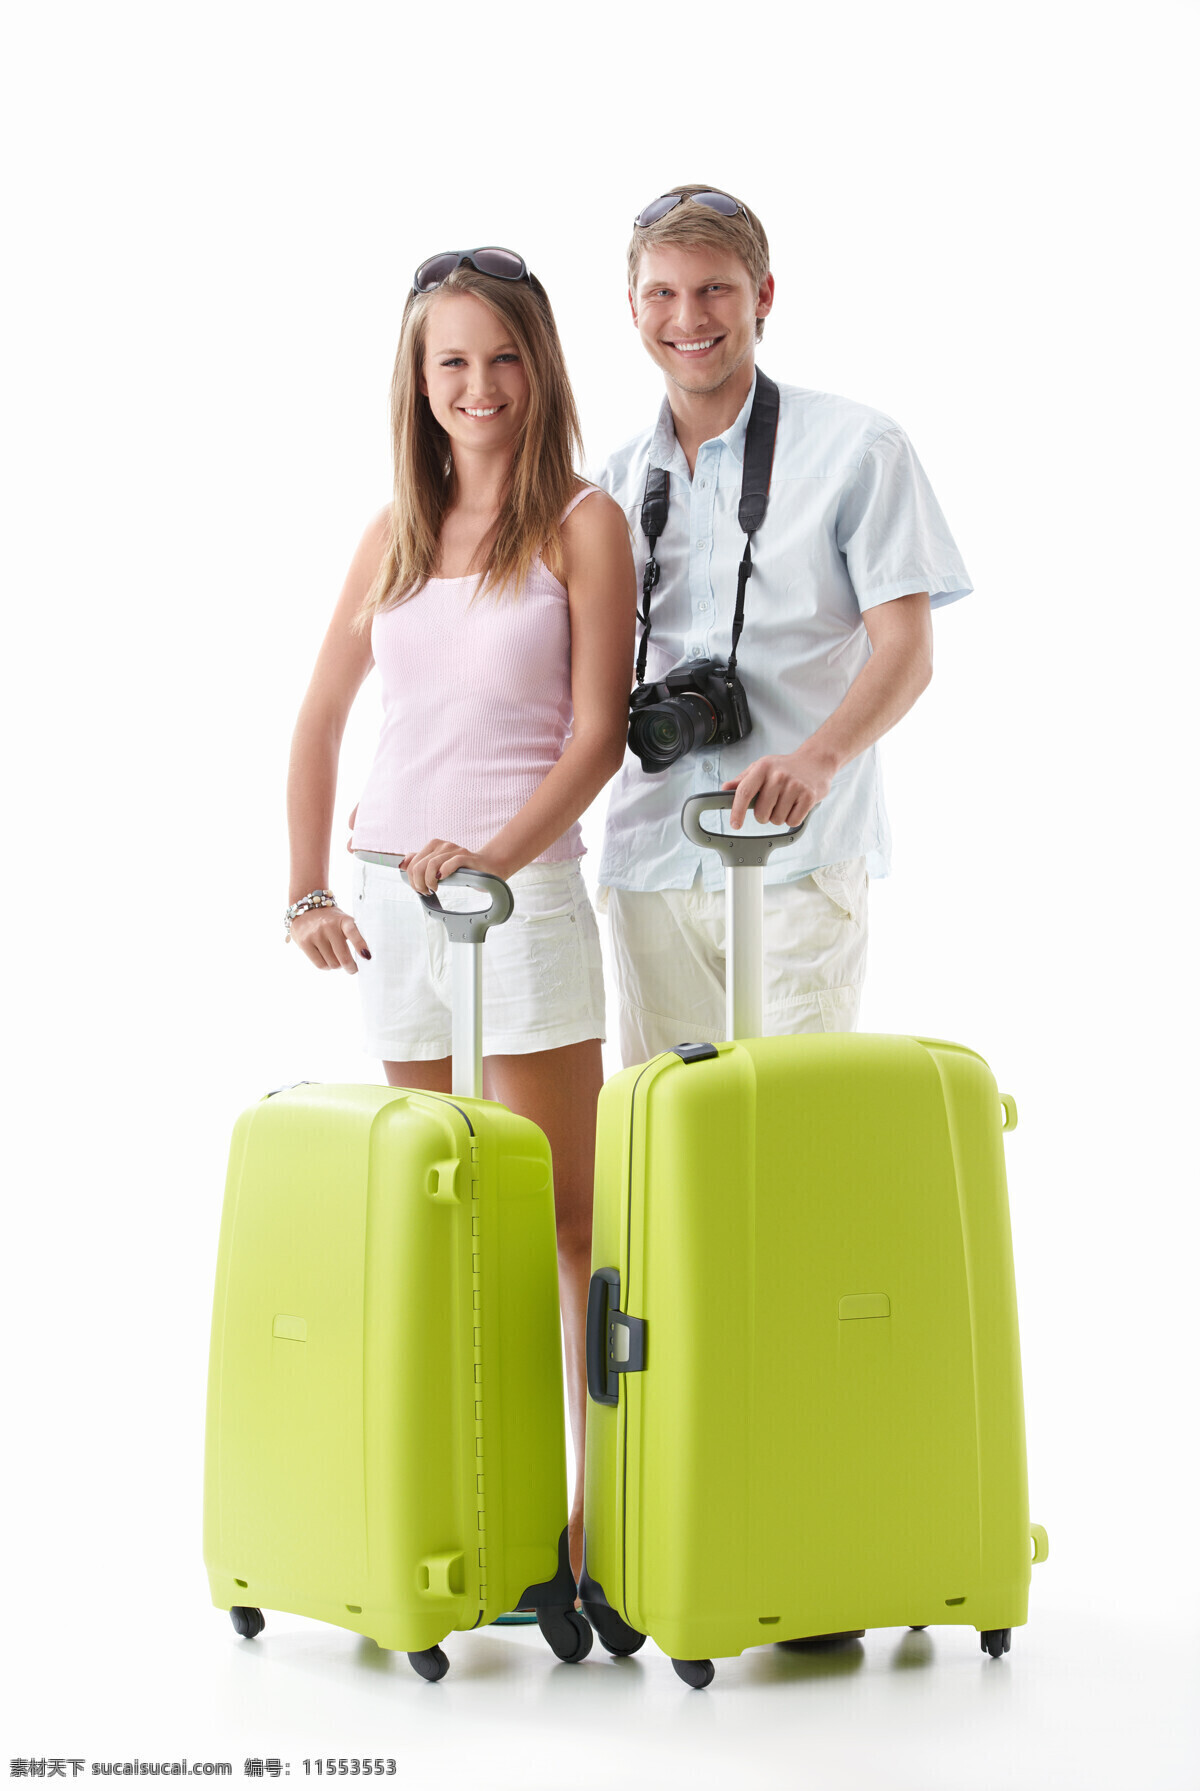 幸福 外国 夫妻 旅行箱 旅行家庭 旅行 旅游 度蜜月 外国夫妻 年轻夫妻 开心 手势 提着 叉腰 微笑 站着 行李箱 两个行李箱 拉着 拿着 相机 高清图片 生活人物 人物图片